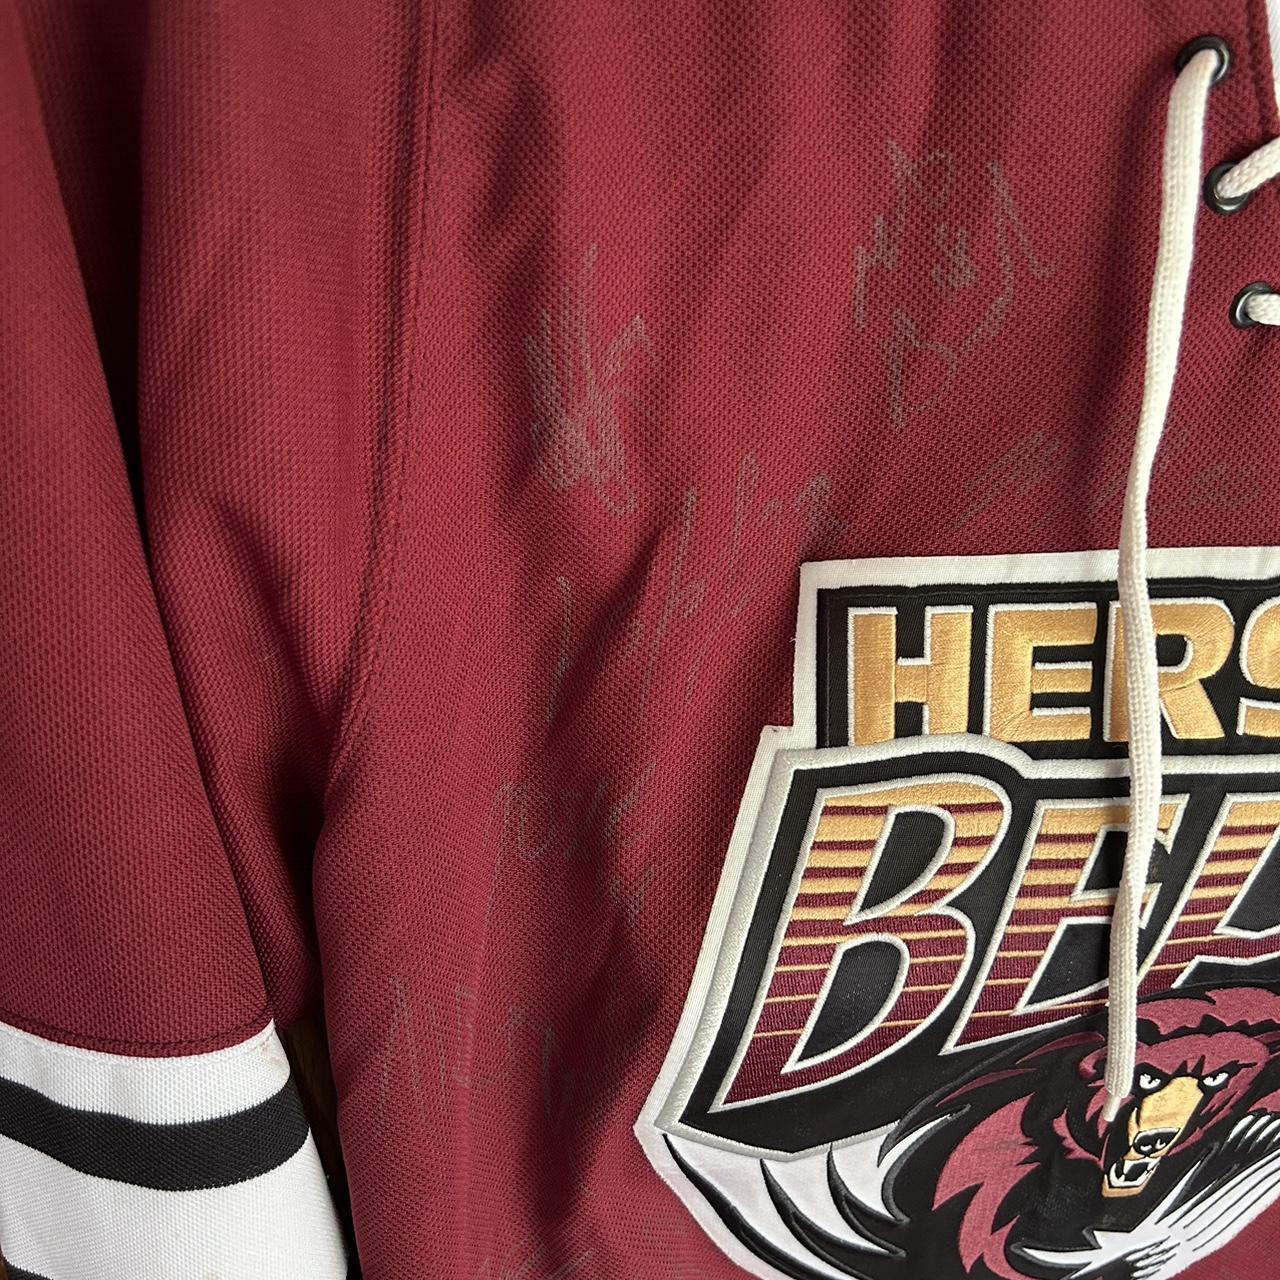 Signed 2013-2014 season Hershey Bears jersey. Size - Depop